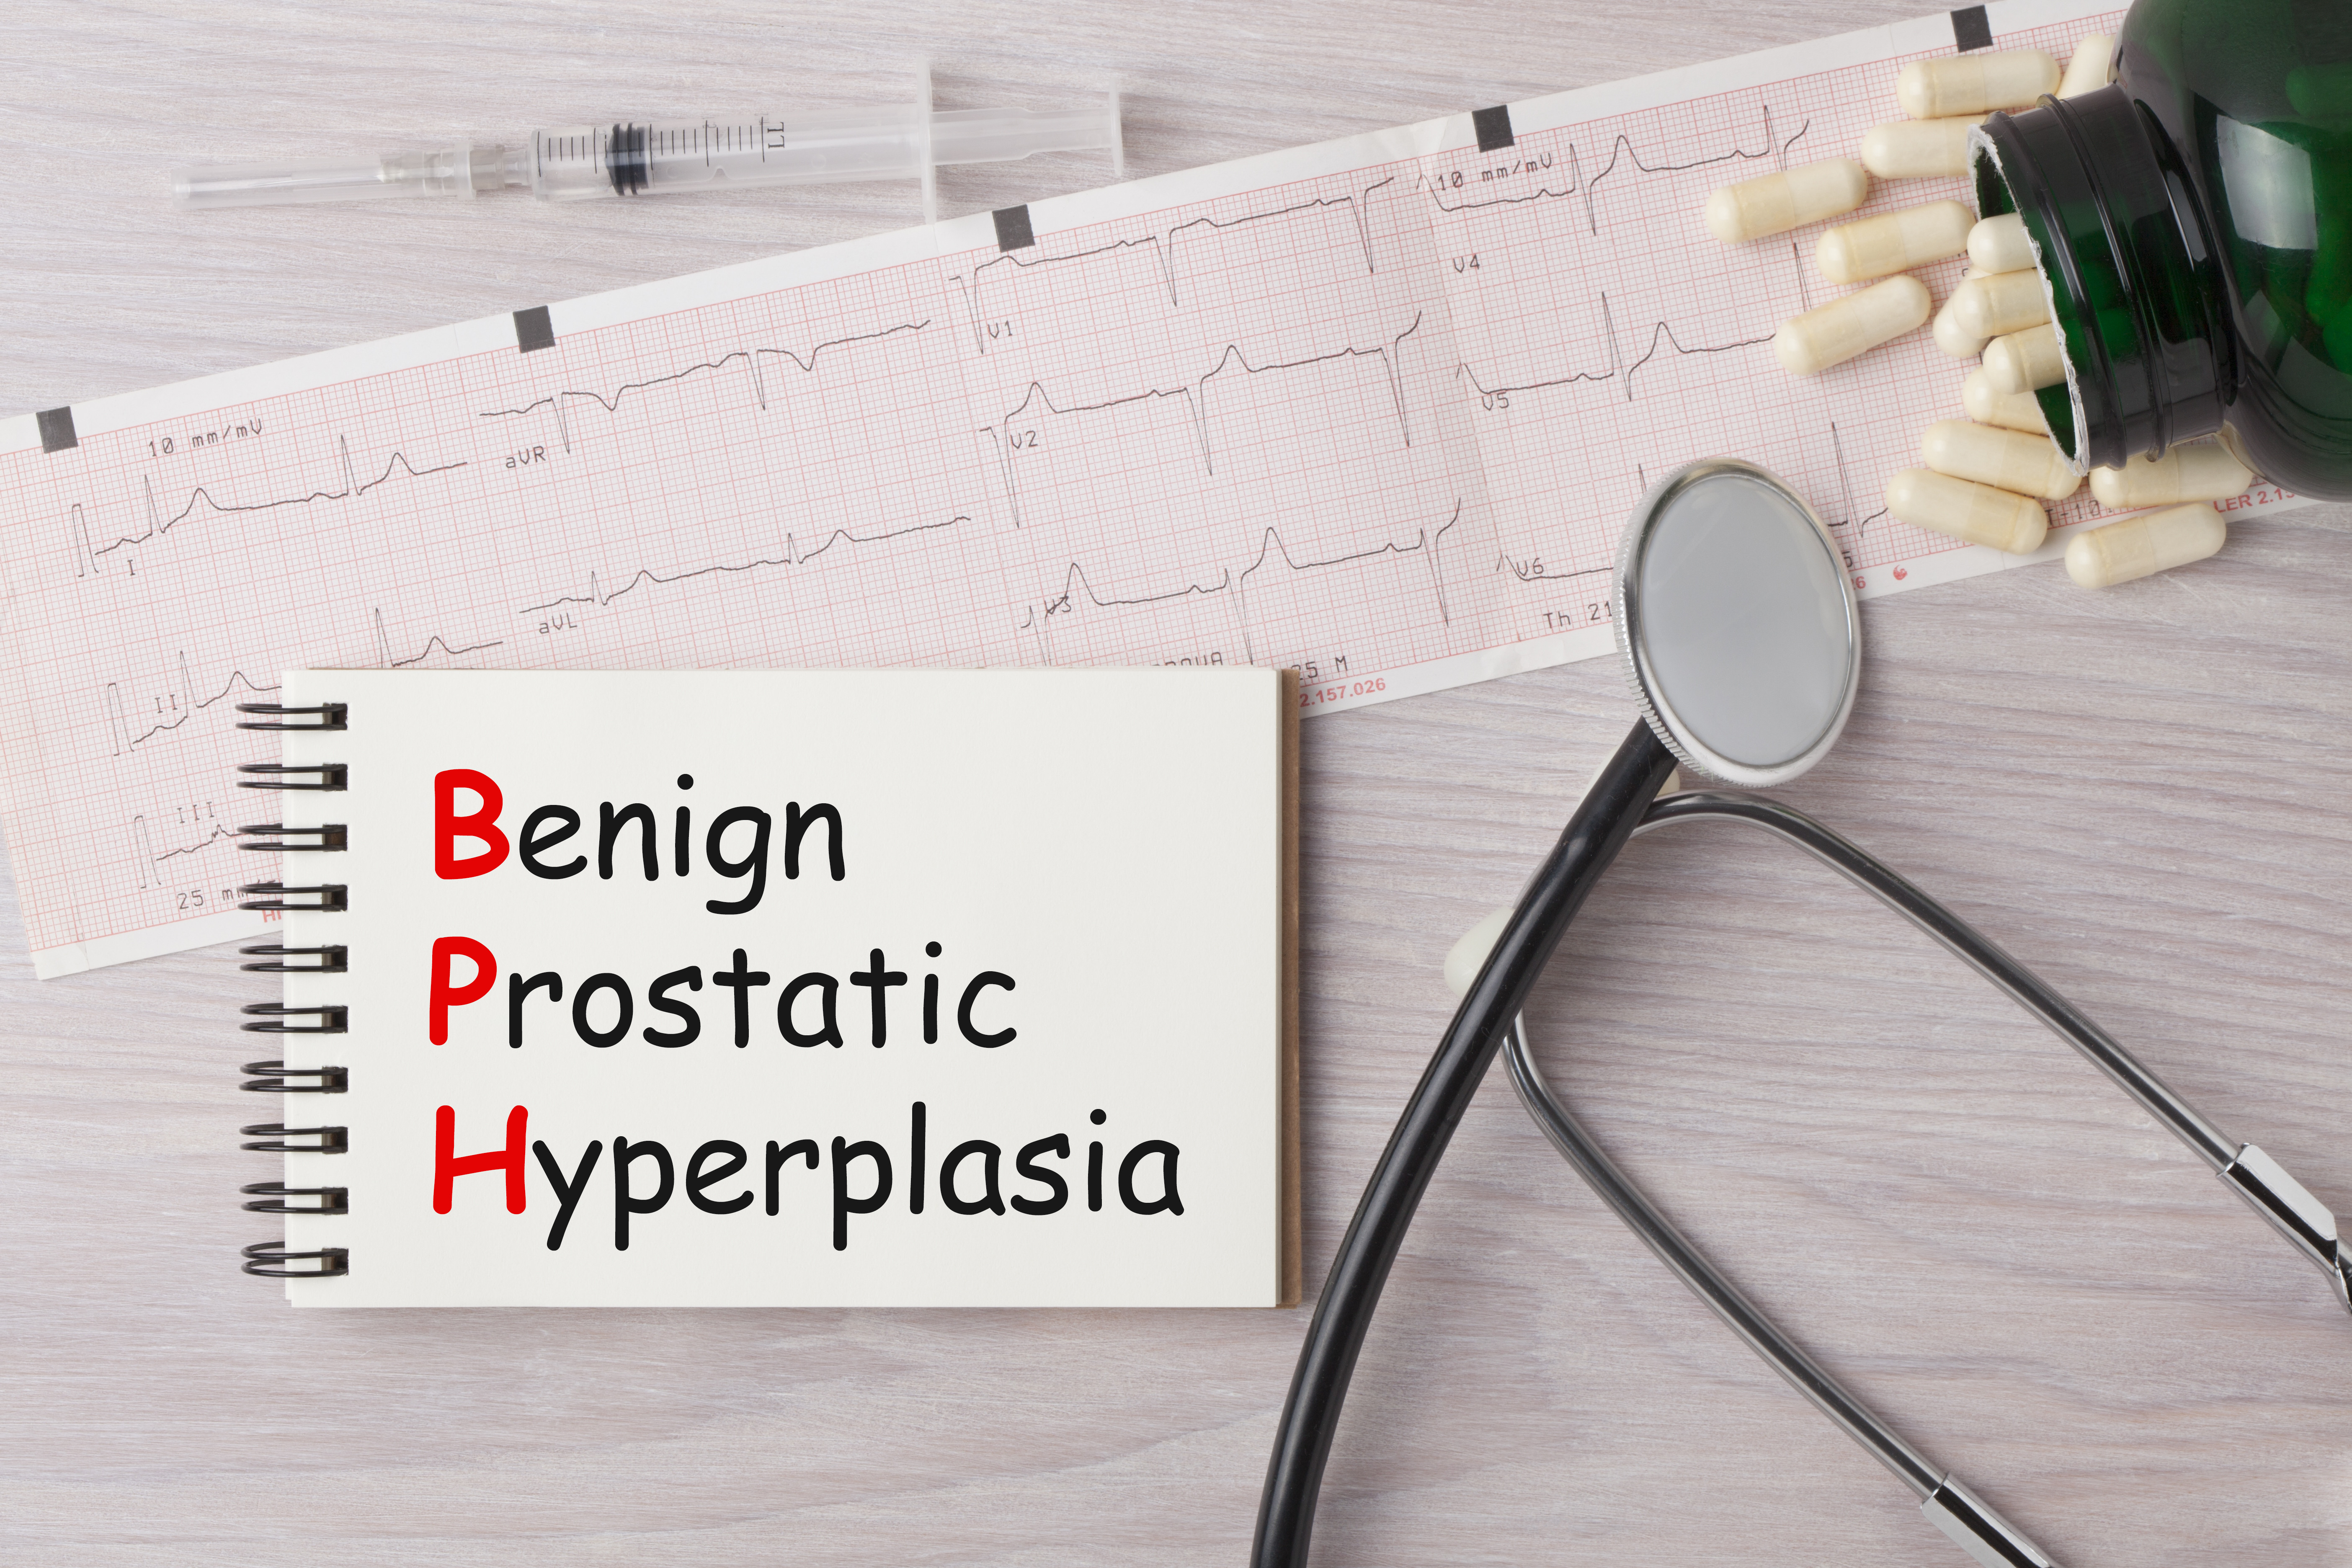 BPH- Hyperplasie bénigne de la prostate écrite sur un ordinateur portable avec stéthoscope, seringue, lunettes et pilules.